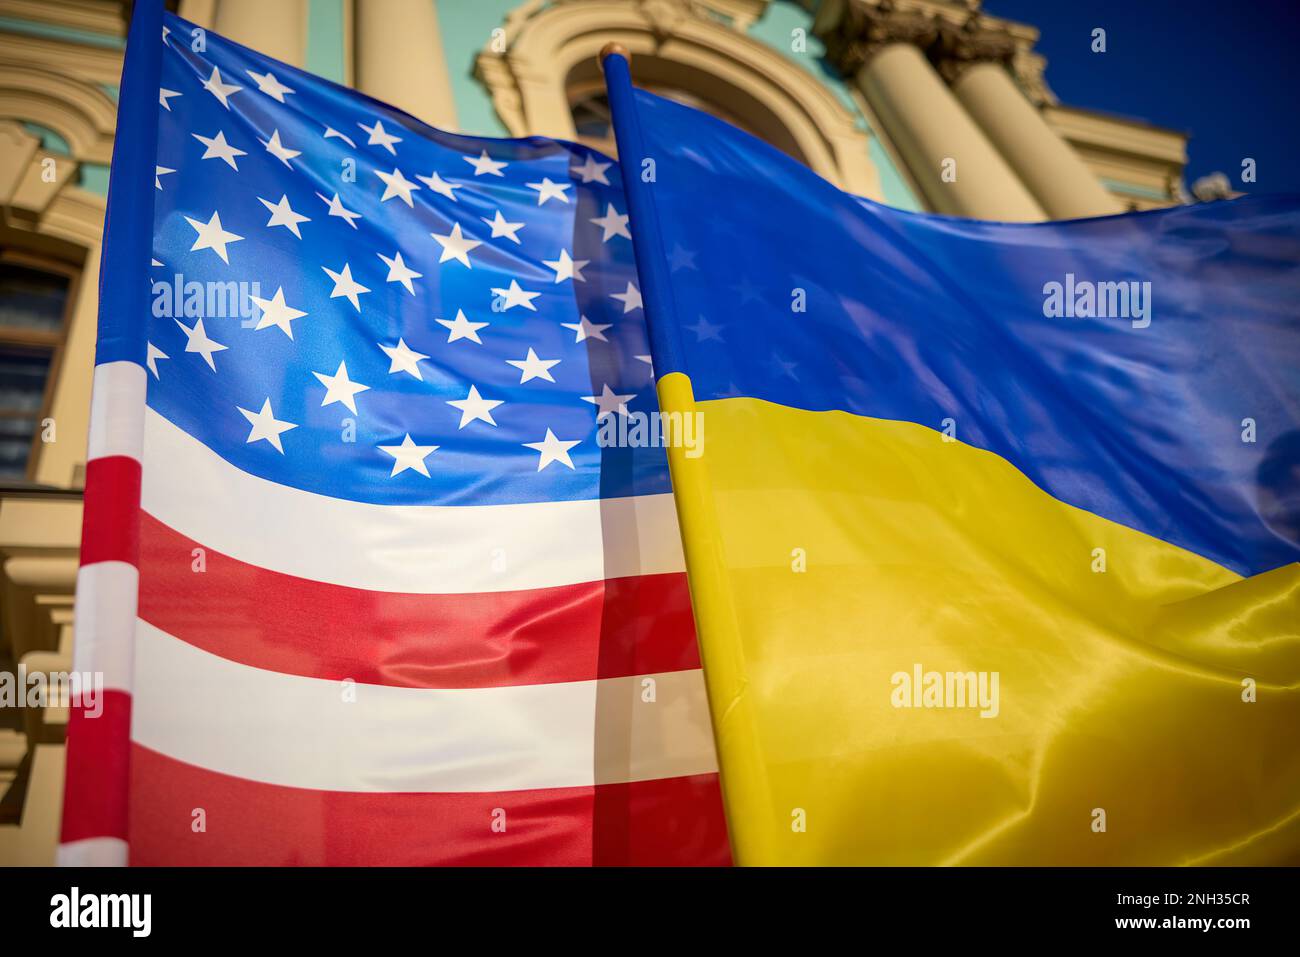 KIEW, UKRAINE - 20. FEBRUAR 2023 - USA Präsident JOE BIDEN machte eine 10-stündige Zugfahrt von Polen in die ukrainische Hauptstadt Kiew, wo er mit dem ukrainischen Präsidenten WOLODYMYR ZELENSKY zusammentraf. Bidens „unter dem Radar“-Besuch sollte das Engagement der Vereinigten Staaten für die Kriegsanstrengungen in der Ukraine und letztlich für den Frieden in der Region bekräftigen. In Kiew kündigte Präsident Biden eine neue Lieferung kritischer Ausrüstung für die Ukraine an. Dieses Paket umfasst Artilleriewaffen, Abwehrsysteme und Radarsysteme zur Luftüberwachung, um die ukrainische Bevölkerung vor Bombardierungen aus der Luft zu schützen. Foto: Amt Des Präsidenten Der Ukraine Stockfoto